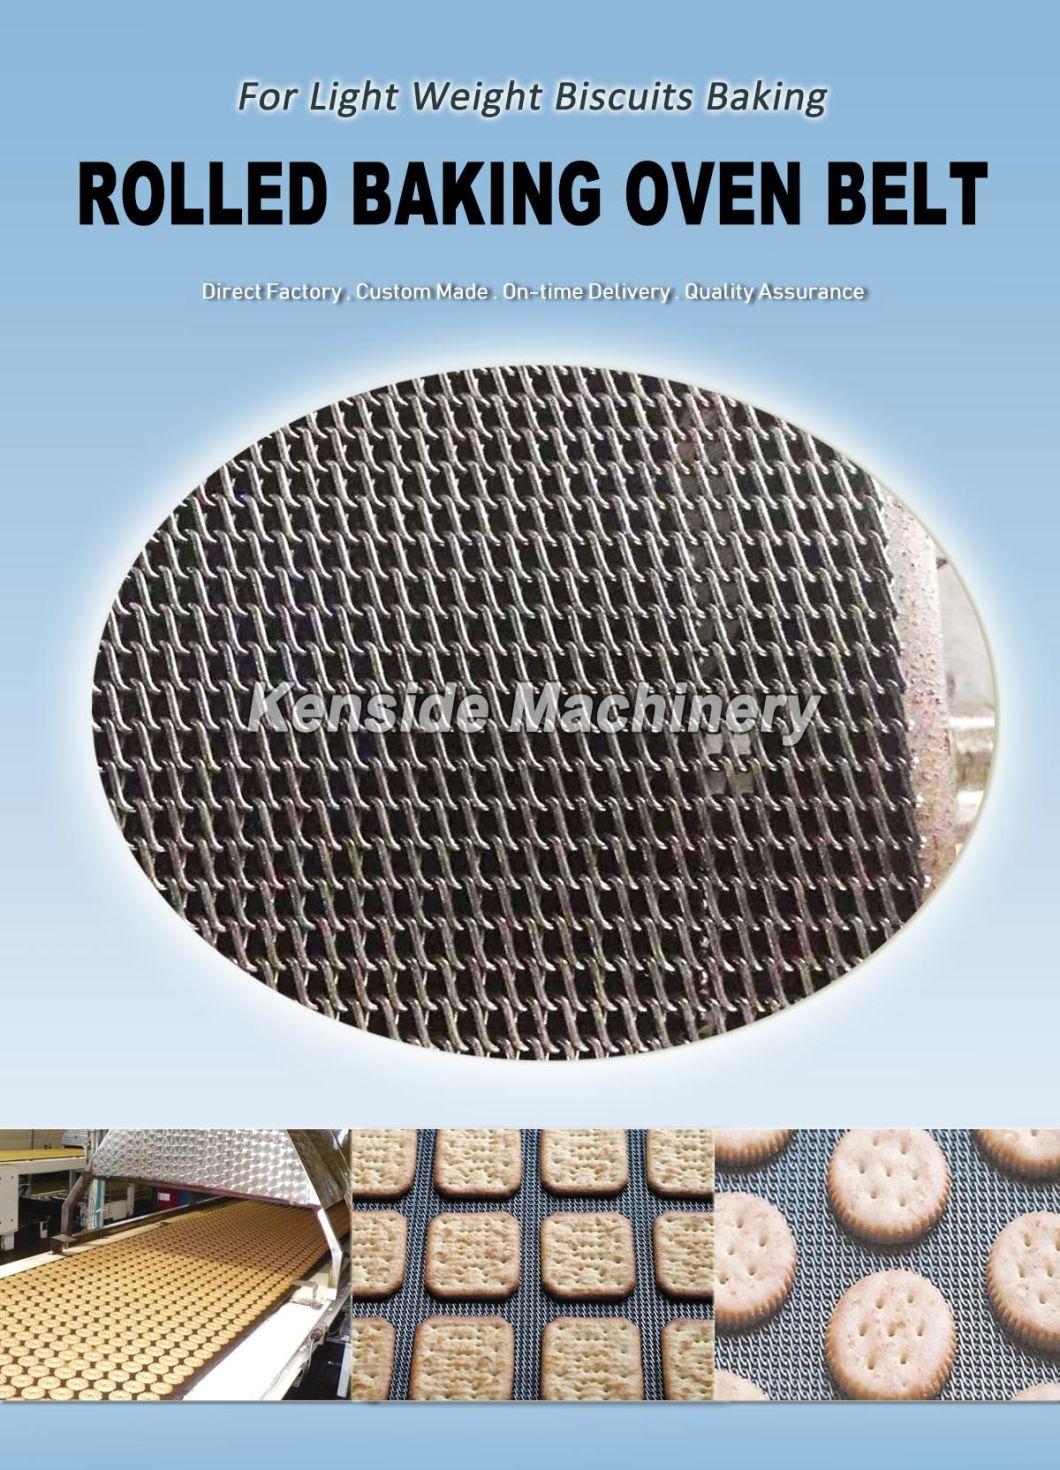 Rolled Bakery Conveyor Belt, Rolled Baking Oven Belt